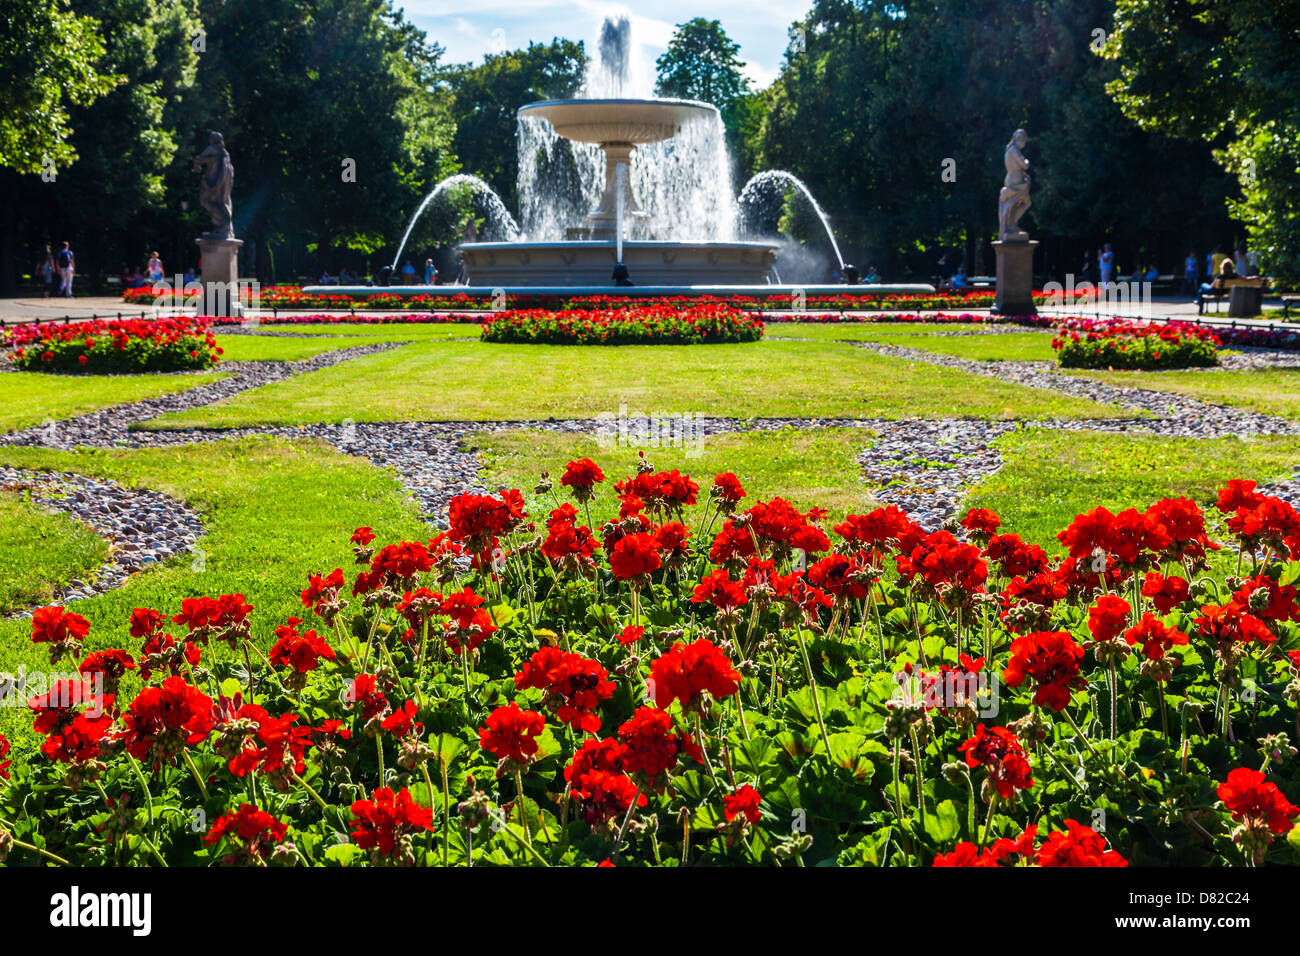 Rote Geranien vor dem Brunnen in Ogród Saski, sächsische Garten, dem ältesten öffentlichen Park in Warschau, Polen. Stockfoto